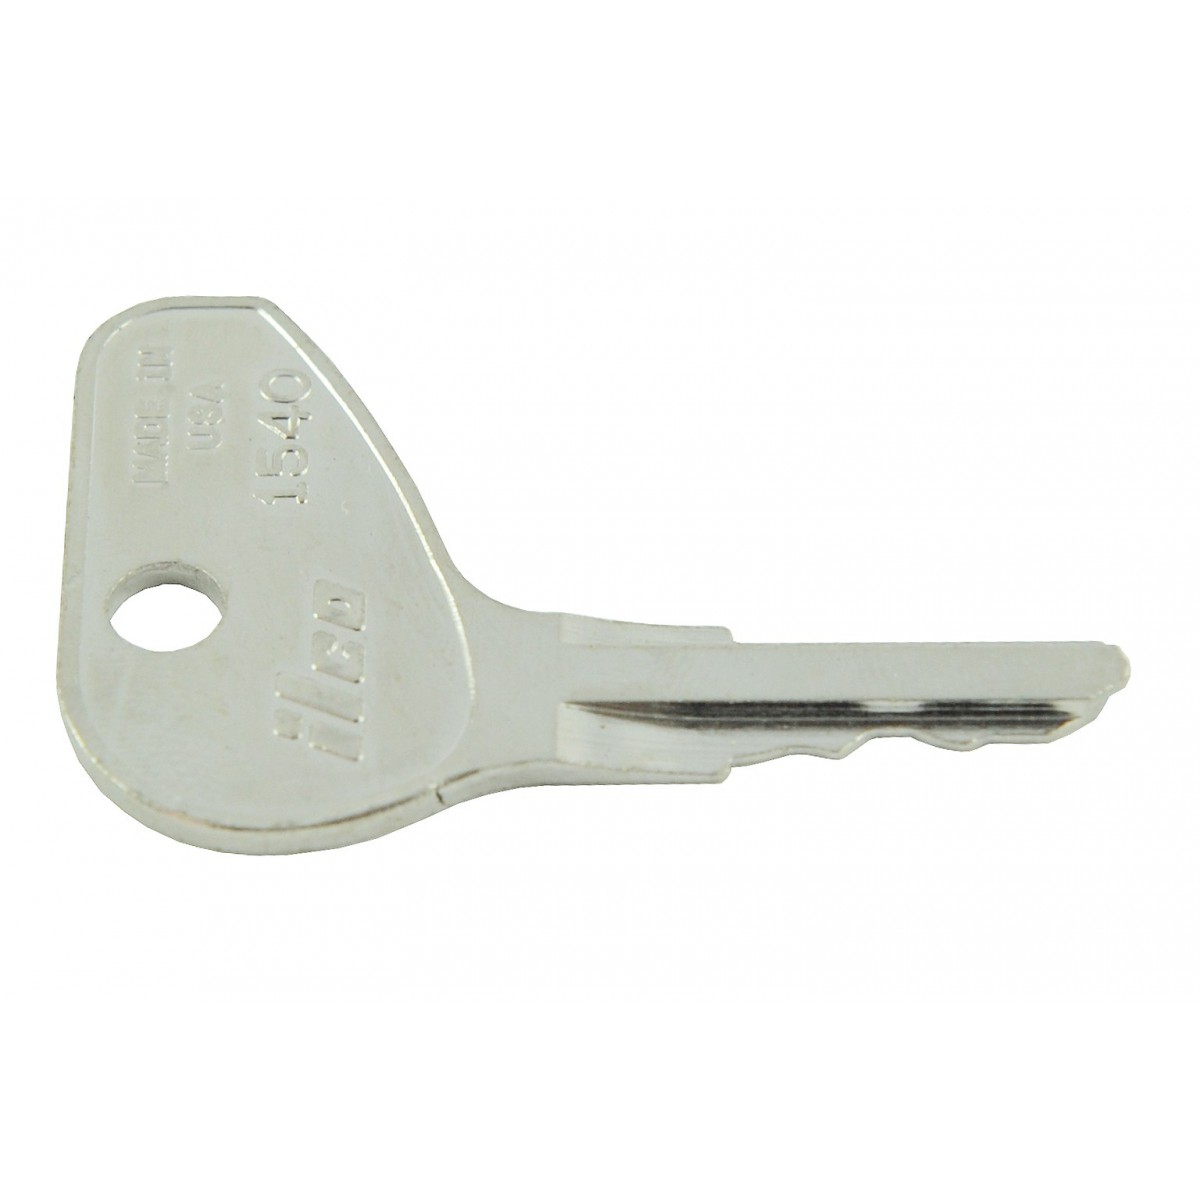 Kubota No.3 ignition key